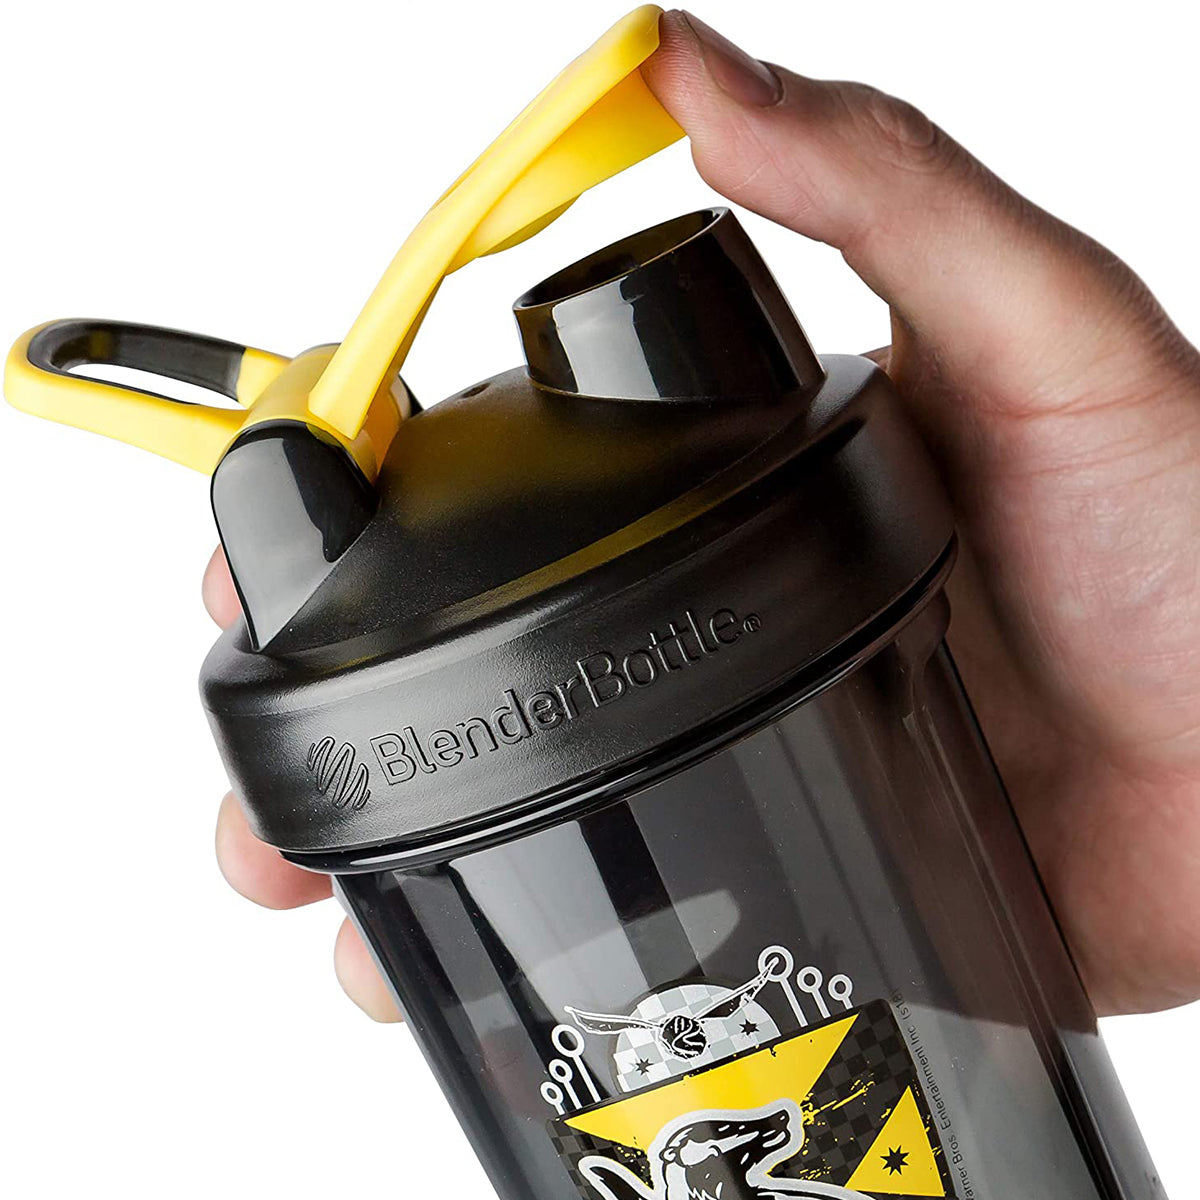 Blender Bottle Harry Potter Pro Series 28 oz. Shaker Mixer Cup with Loop Top Blender Bottle